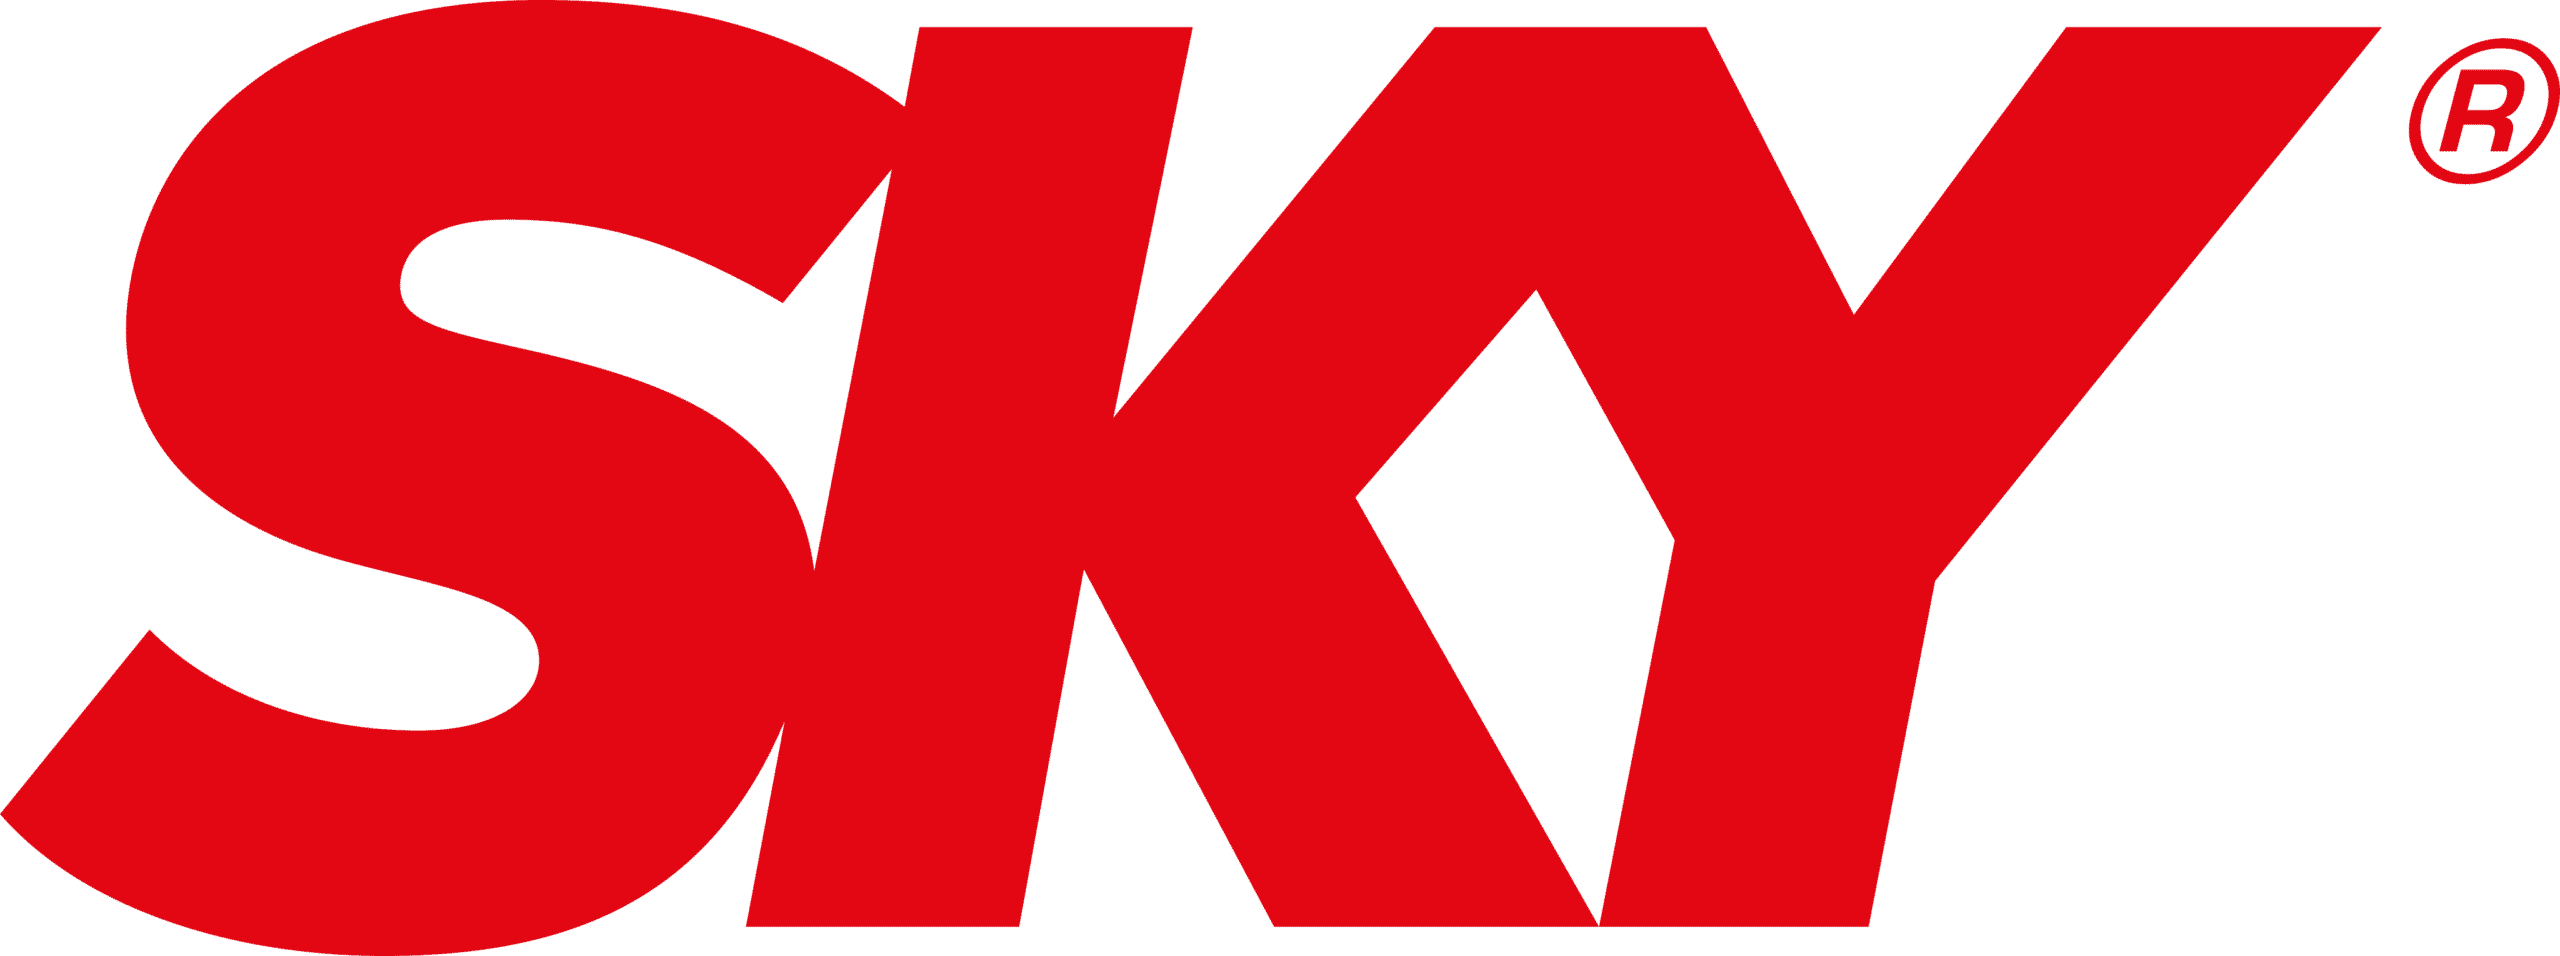 TIM e SKY fecham parceria no mercado de televisão por assinatura